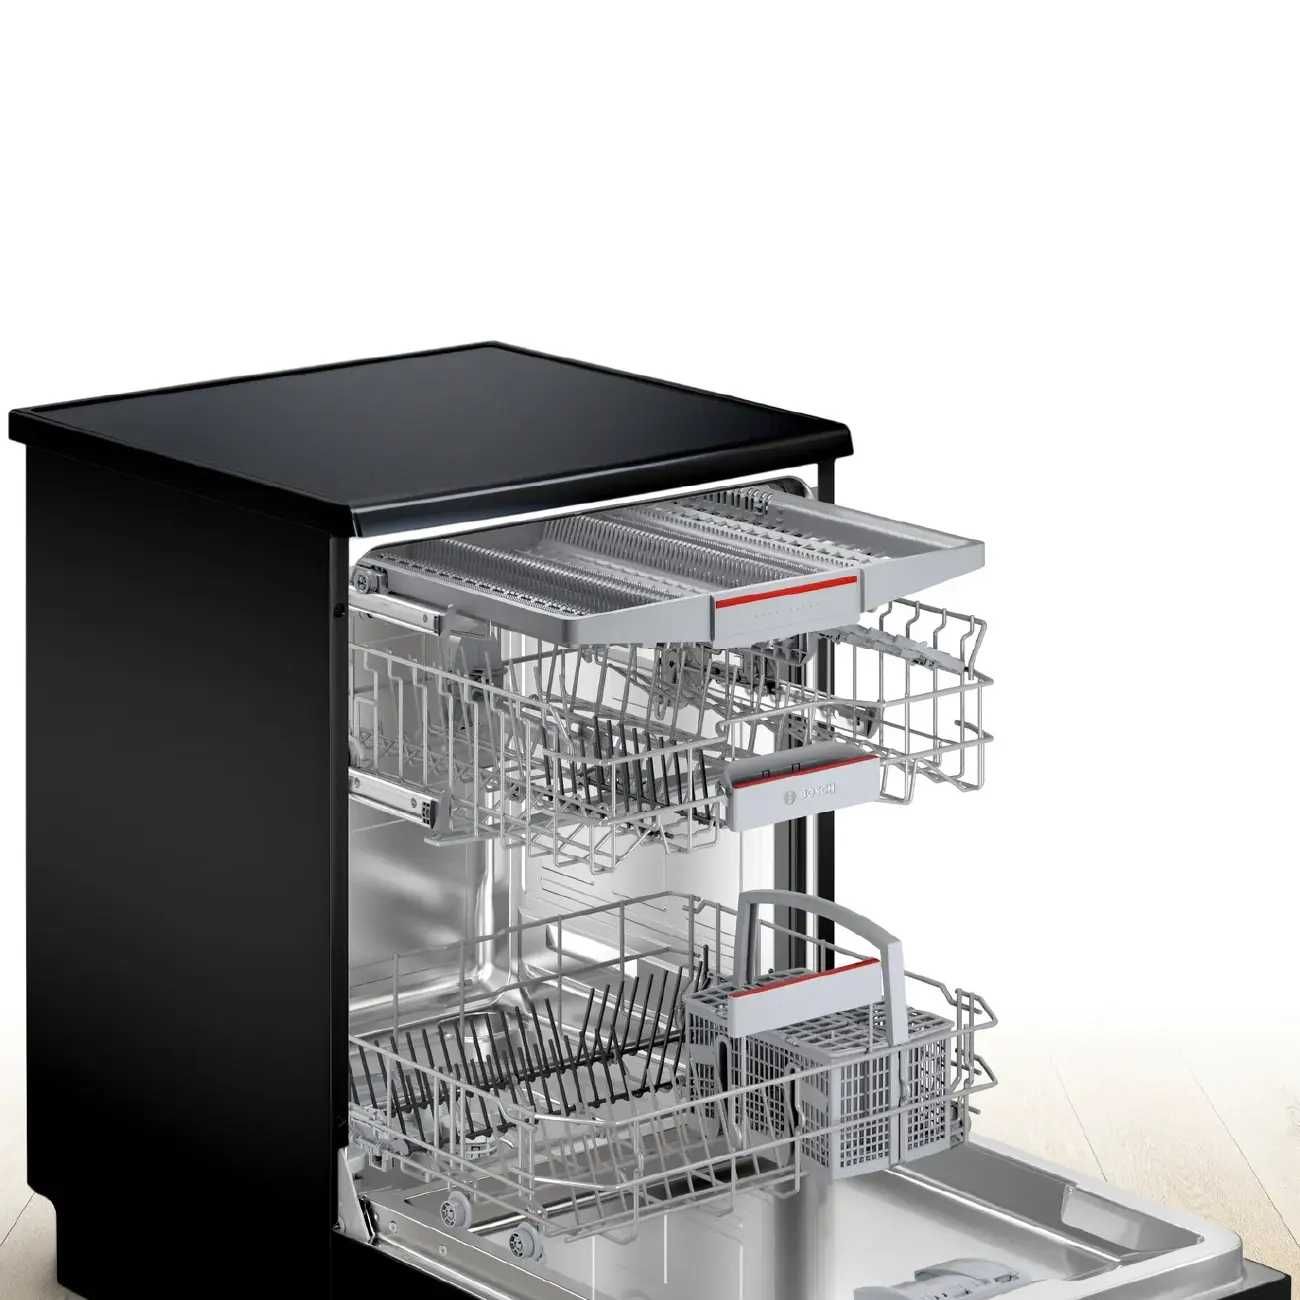 Посудомоечная машина BOSCH SMS46NB01B / цвет черный / новый